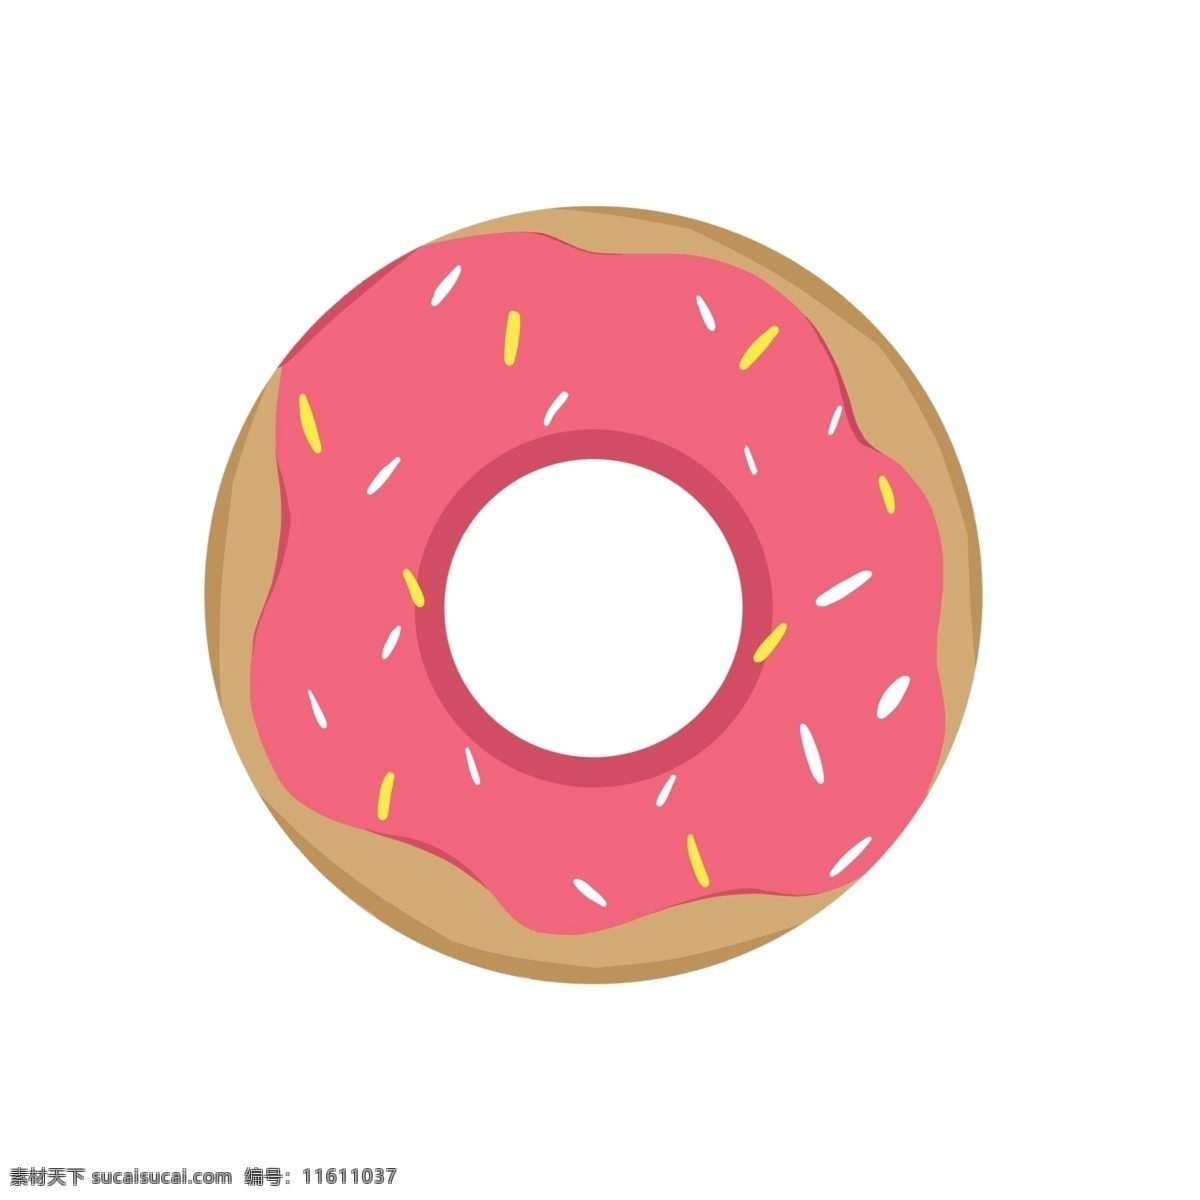 粉色 美味 甜甜 圈 卡通甜甜圈 零食插画 甜食 食物插画 卡通食物插画 美味的甜甜圈 粉色甜甜圈